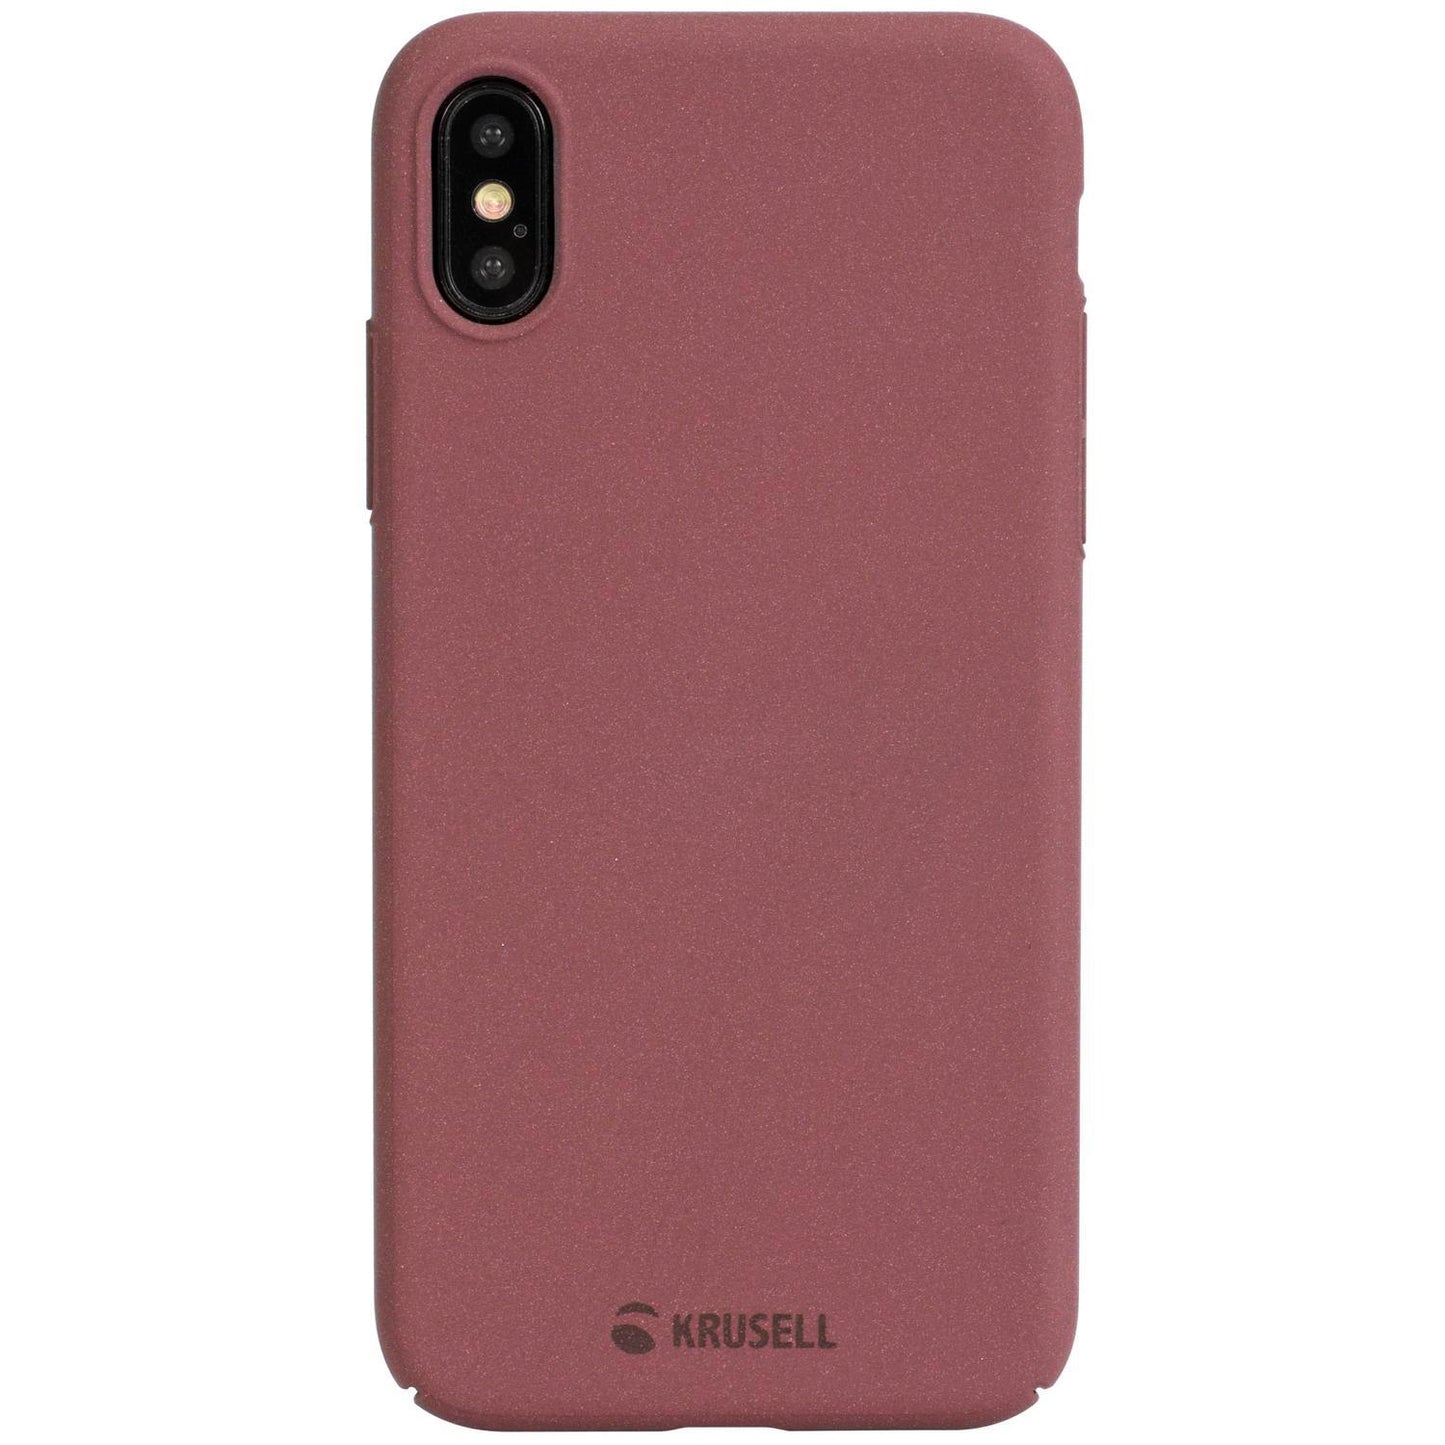 Чехол для телефона с текстурой песчаника для iPhone X/XS Krusell